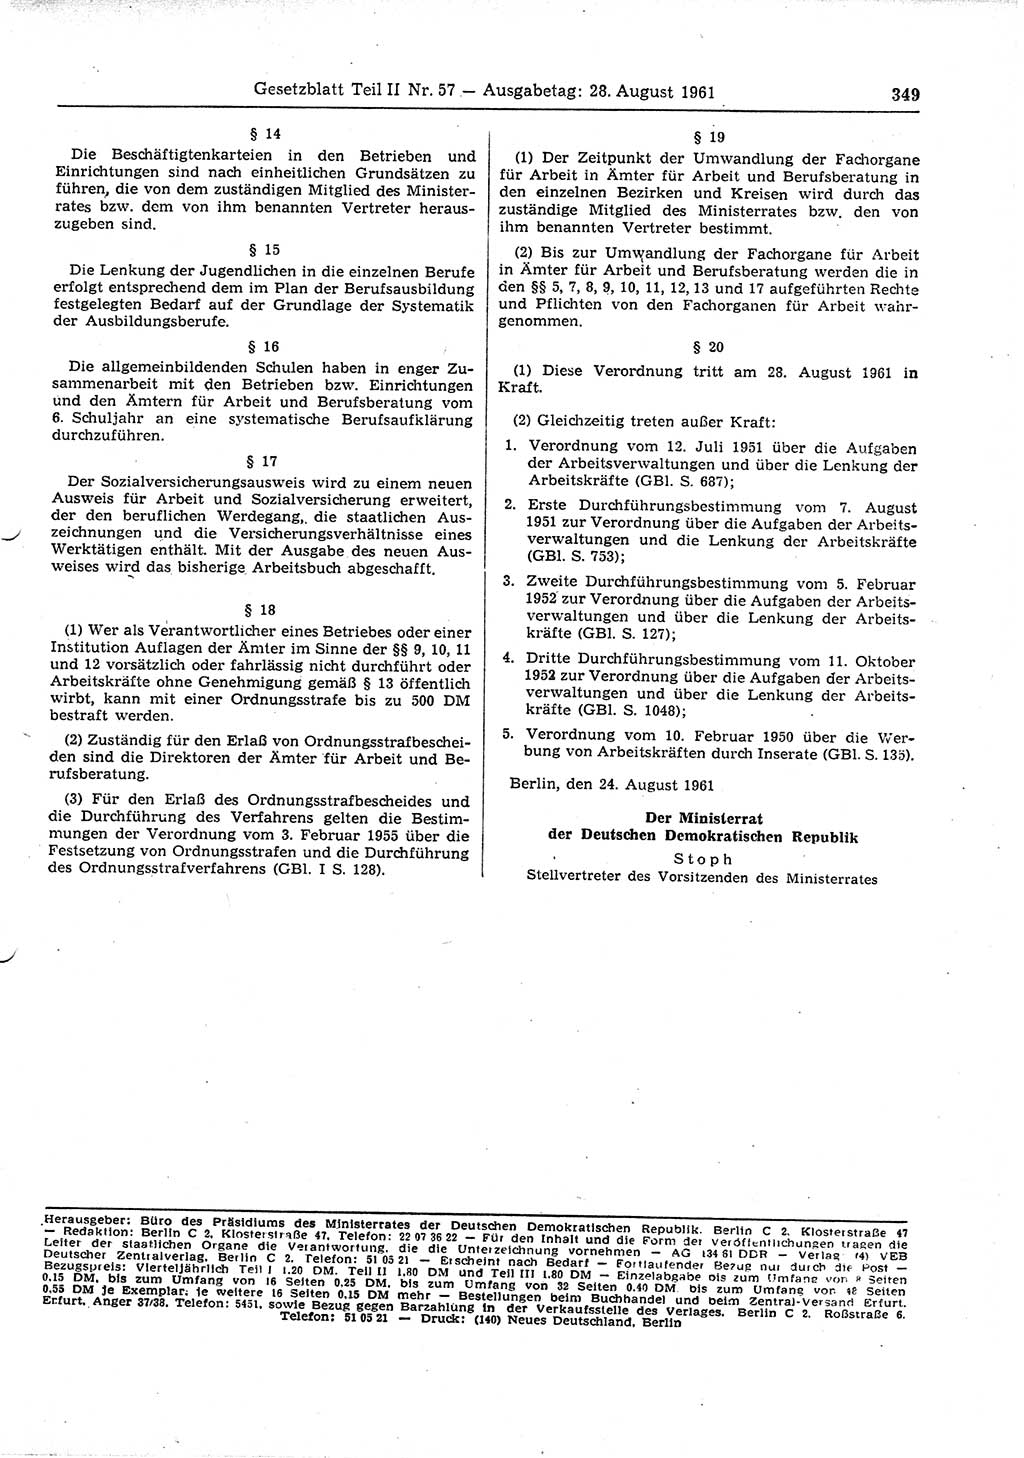 Gesetzblatt (GBl.) der Deutschen Demokratischen Republik (DDR) Teil ⅠⅠ 1961, Seite 349 (GBl. DDR ⅠⅠ 1961, S. 349)